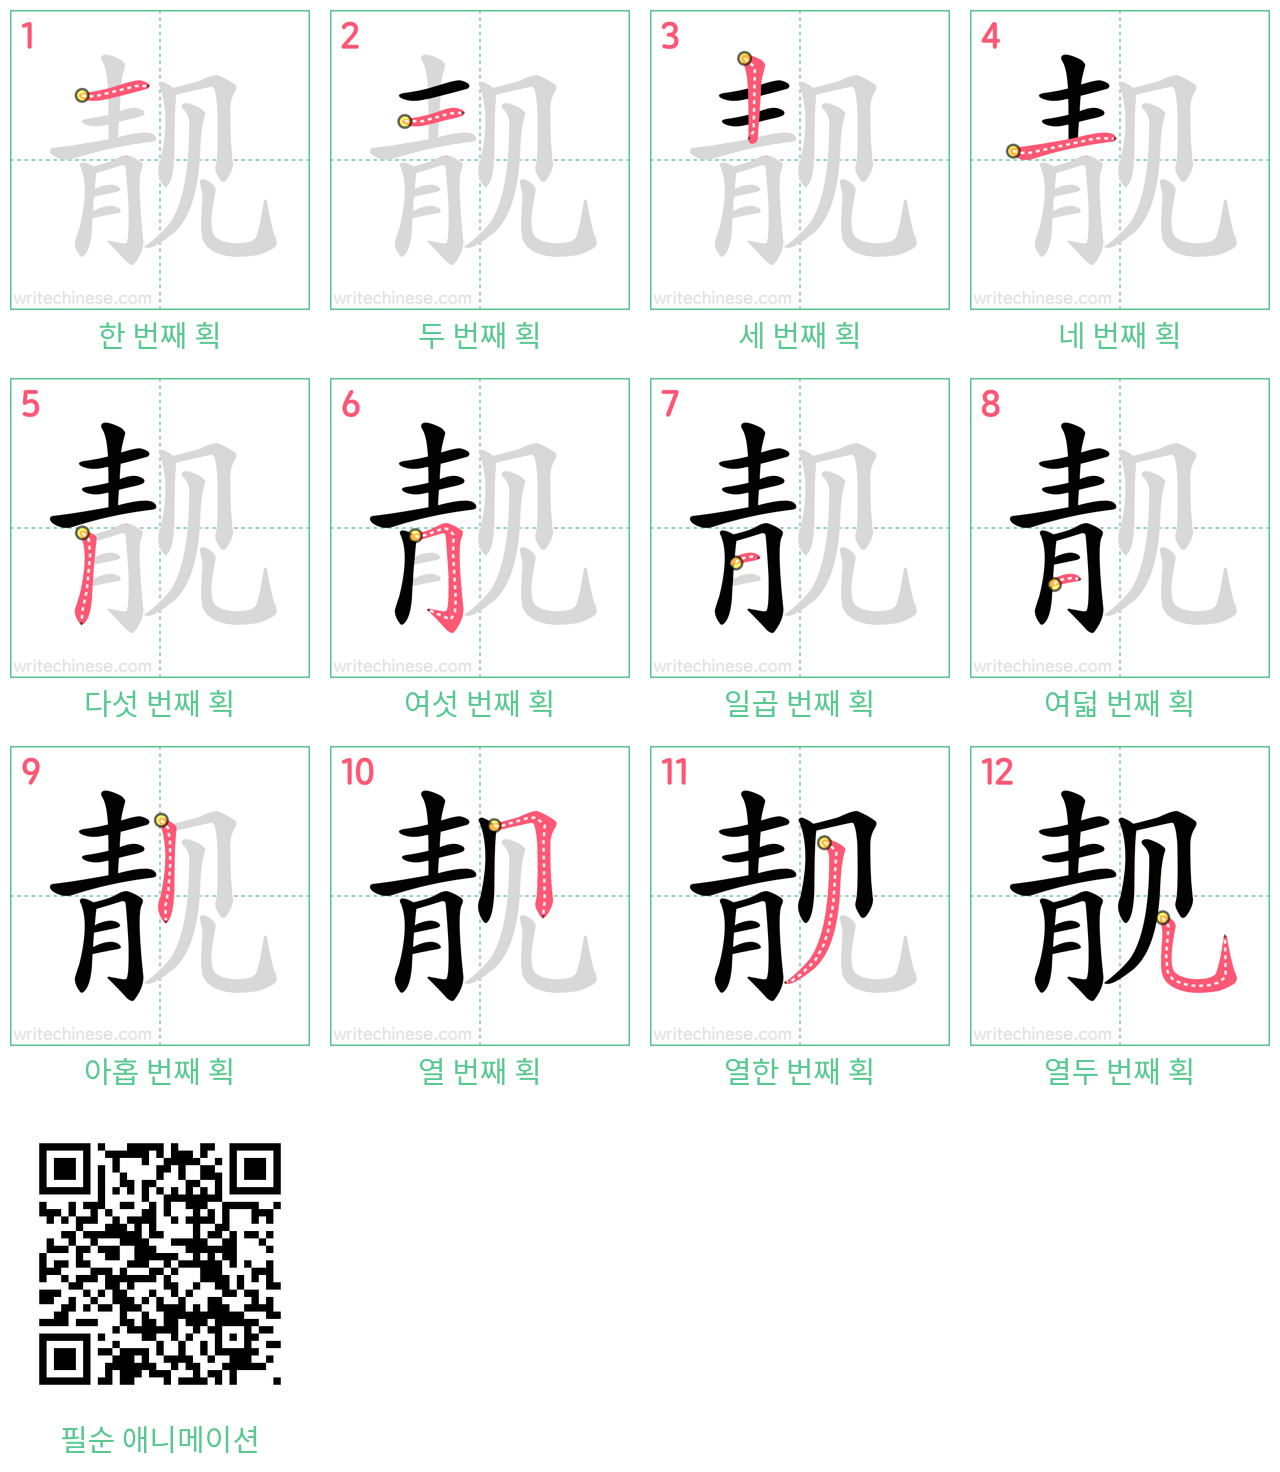 靓 step-by-step stroke order diagrams